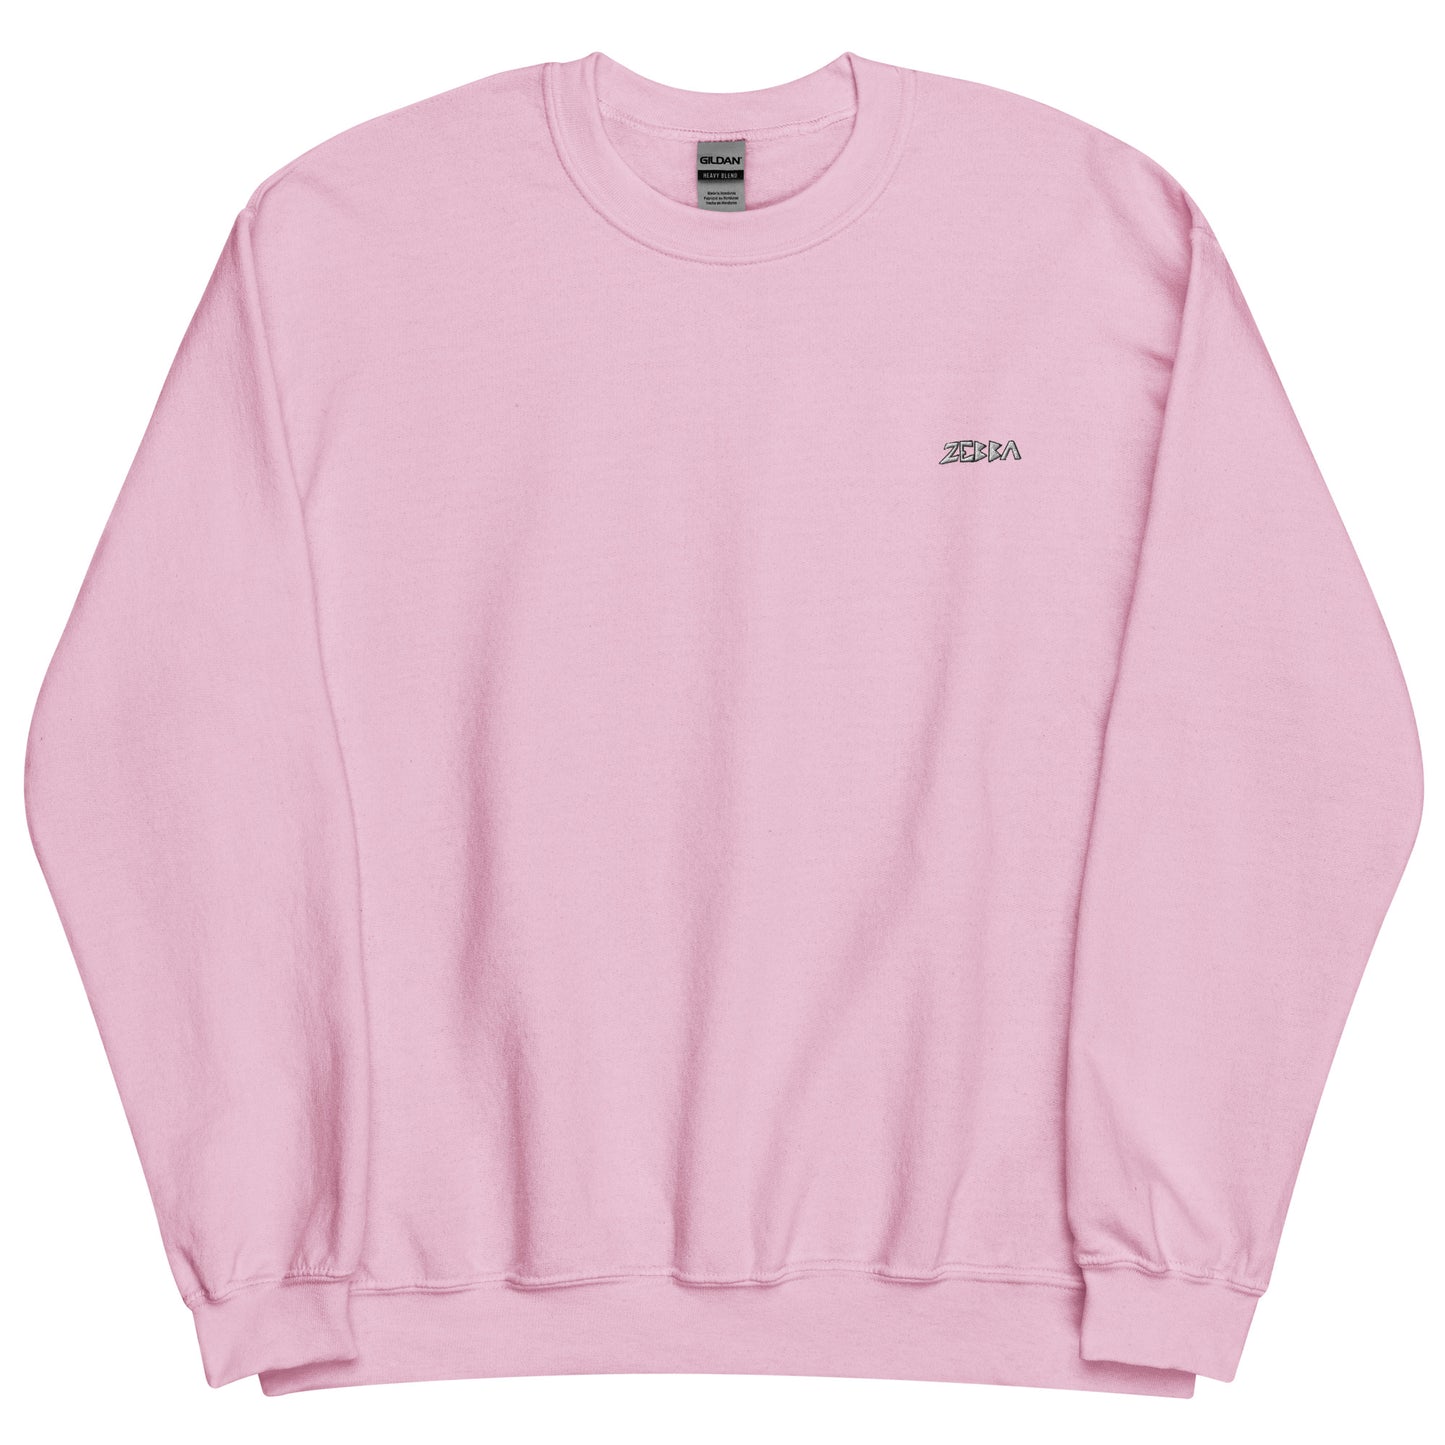 OG Sweater